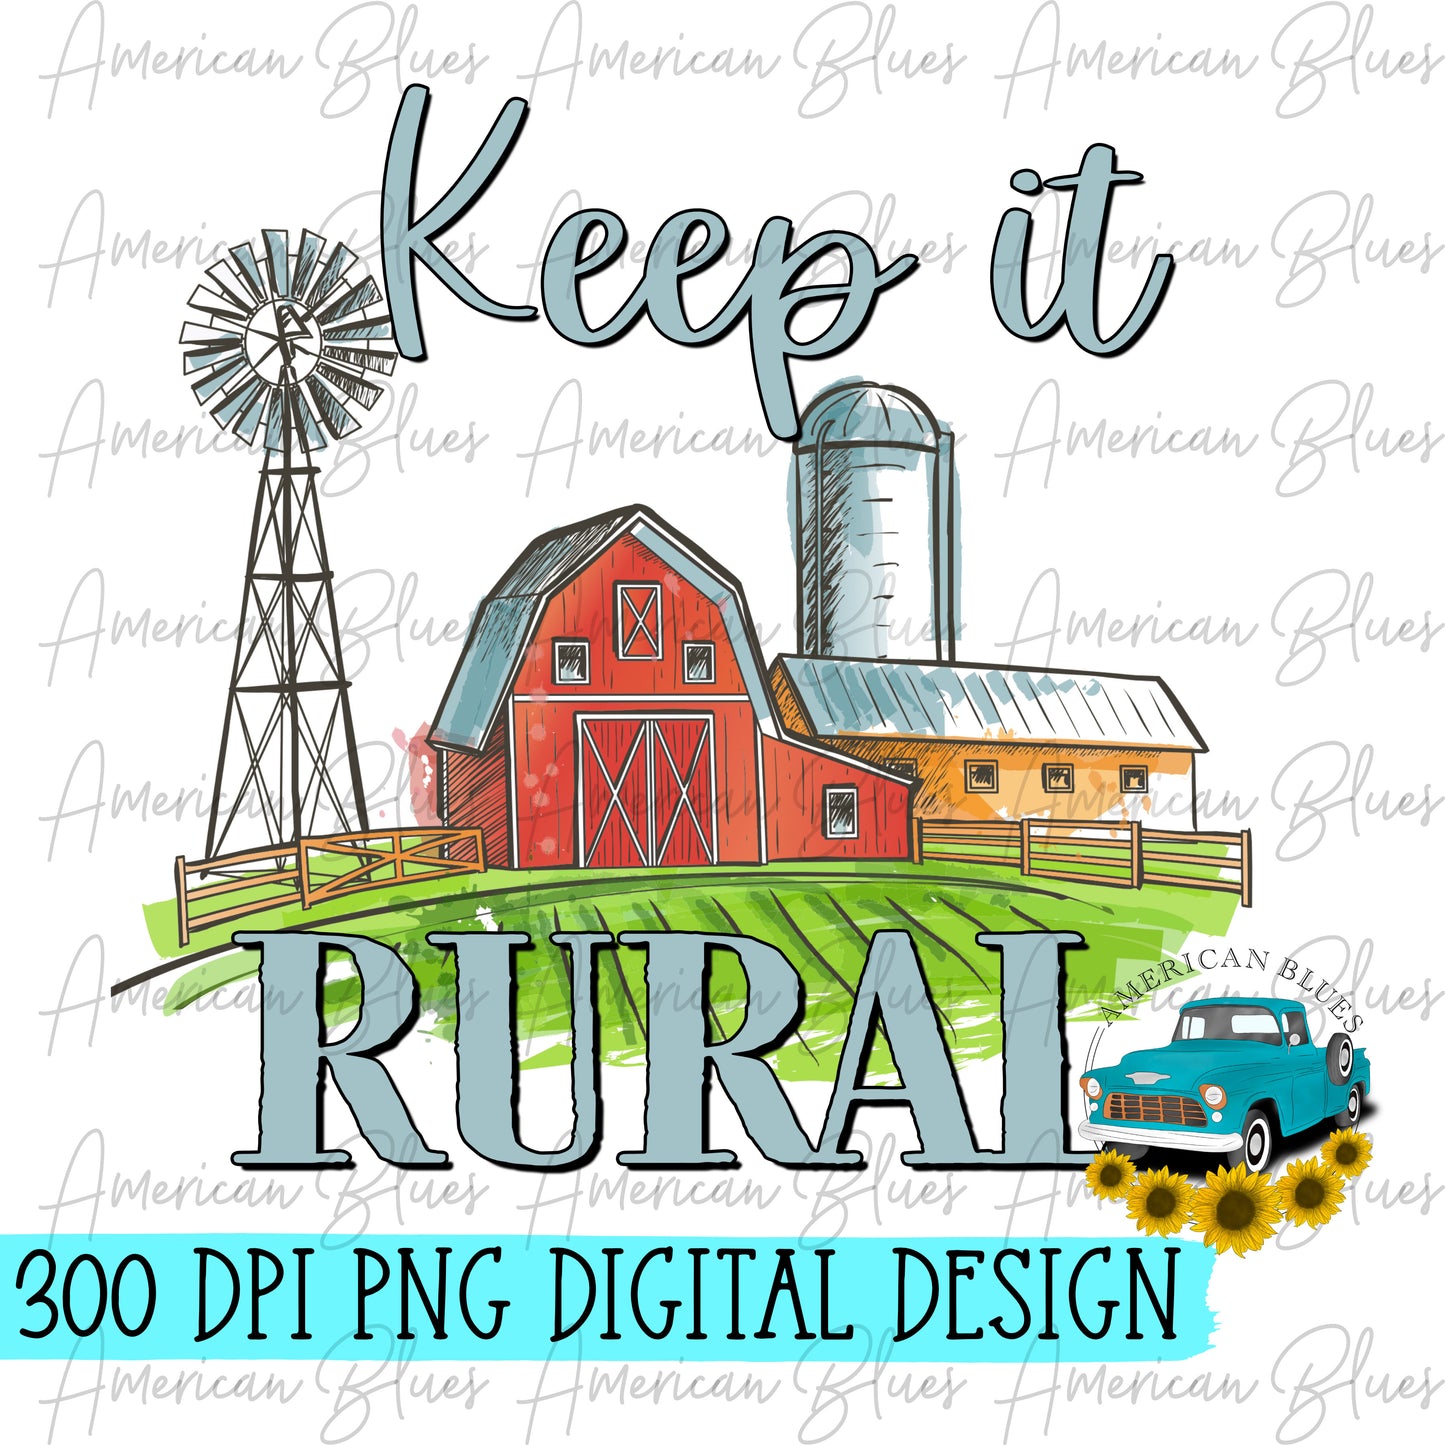 Keep it rural